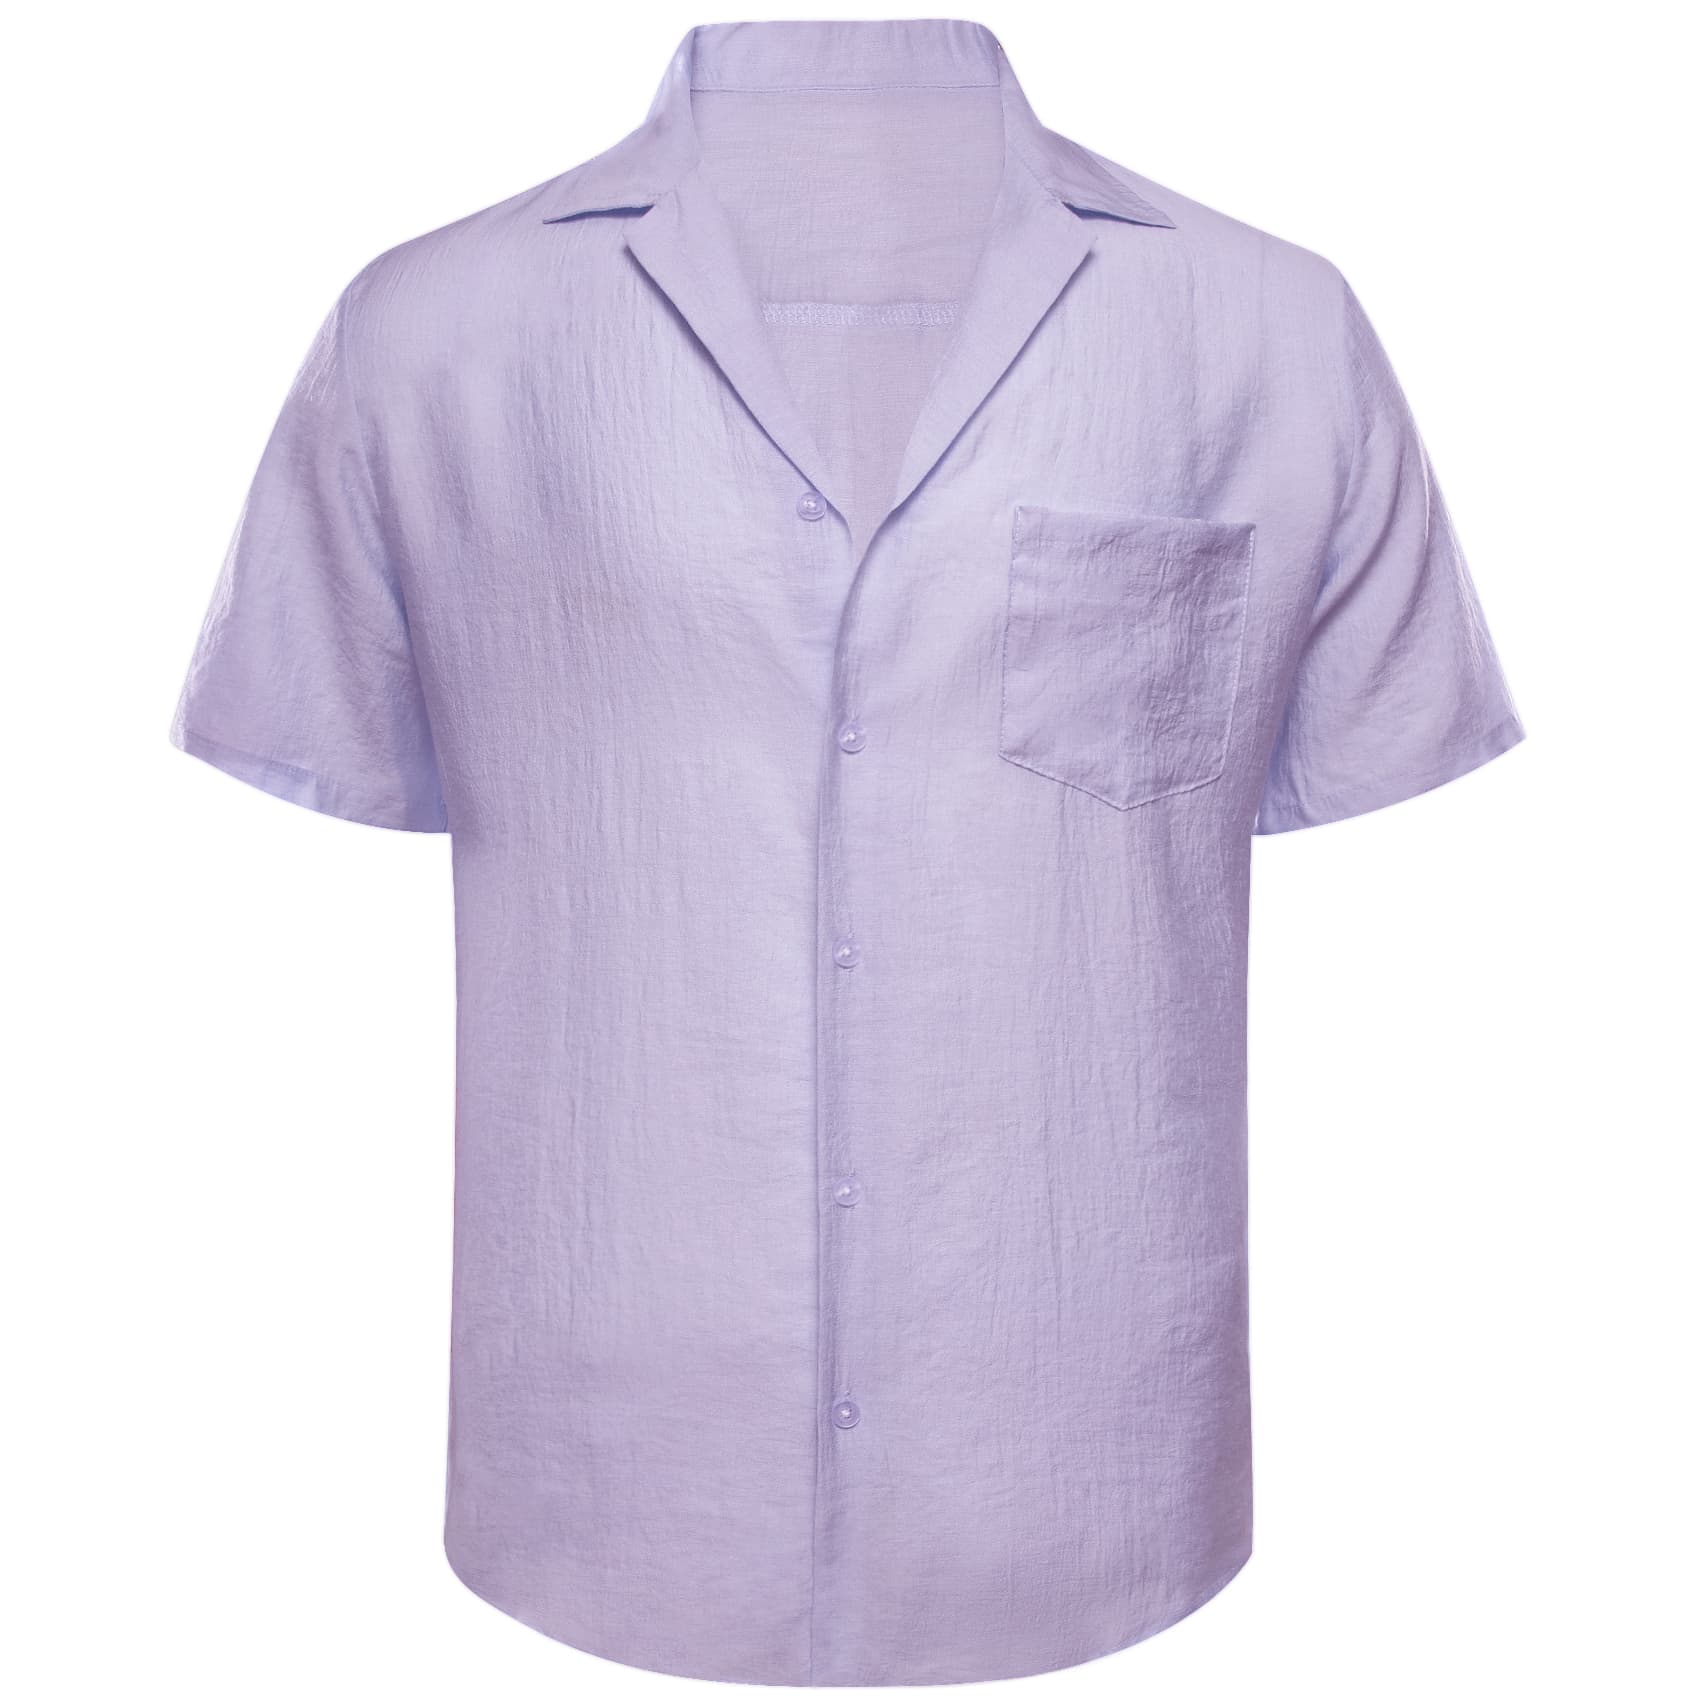 mens light purple button-up shirt